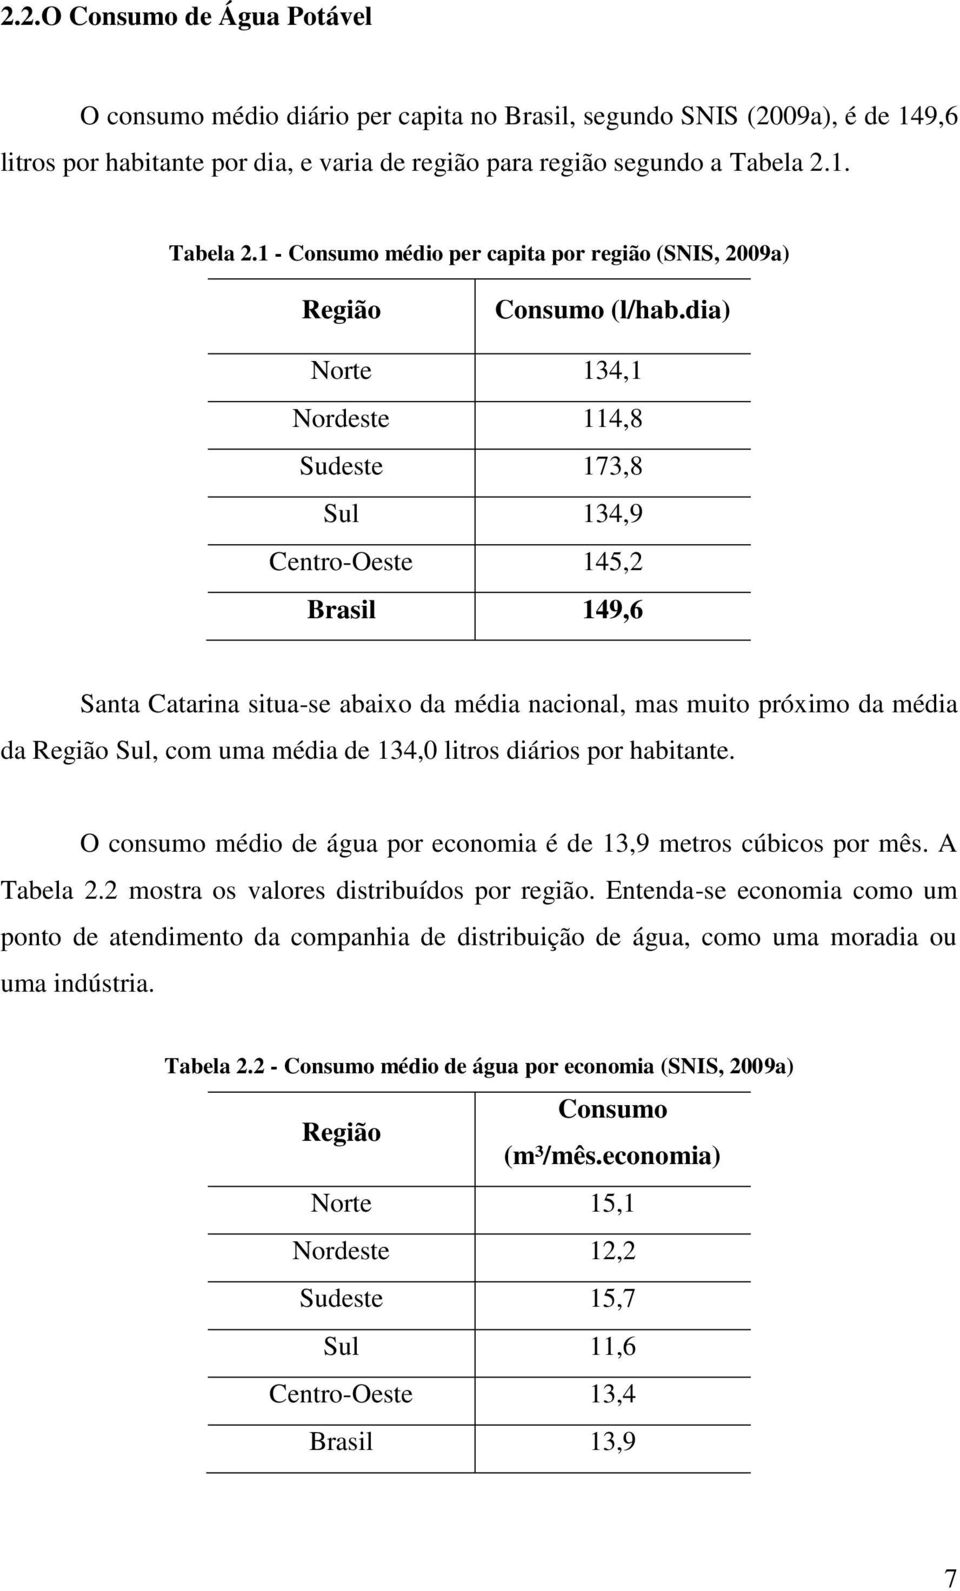 dia) Norte 134,1 Nordeste 114,8 Sudeste 173,8 Sul 134,9 Centro-Oeste 14,2 Brasil 149,6 Santa Catarina situa-se abaixo da média nacional, mas muito próximo da média da Região Sul, com uma média de